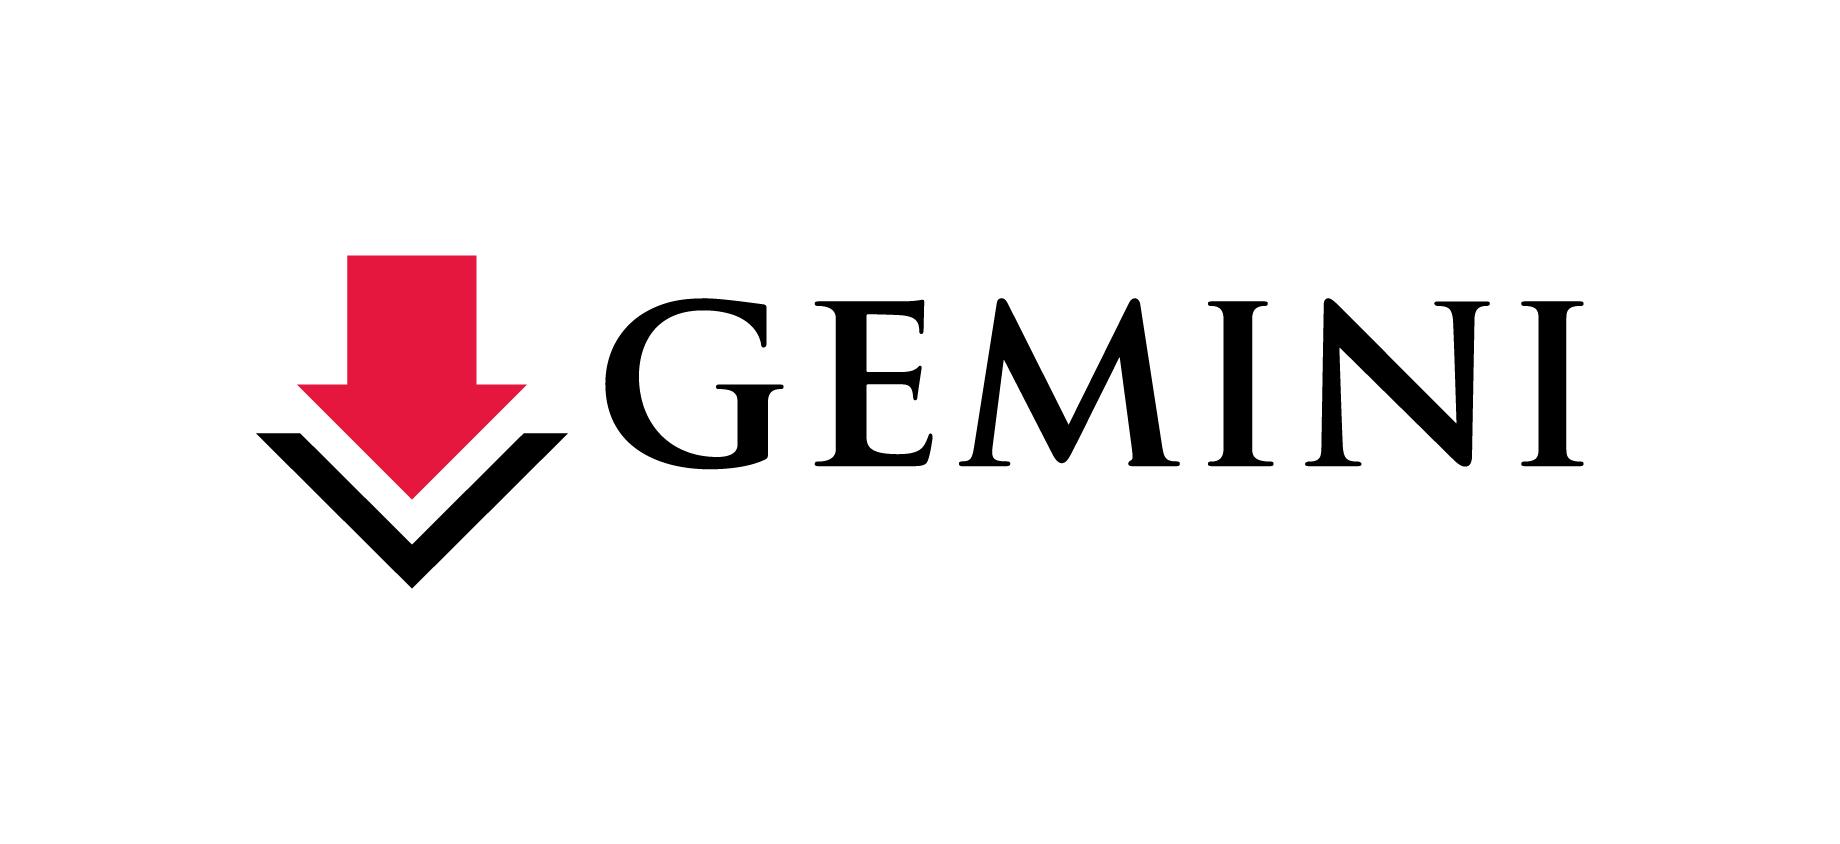 Google Sign Logo - Careers at Gemini